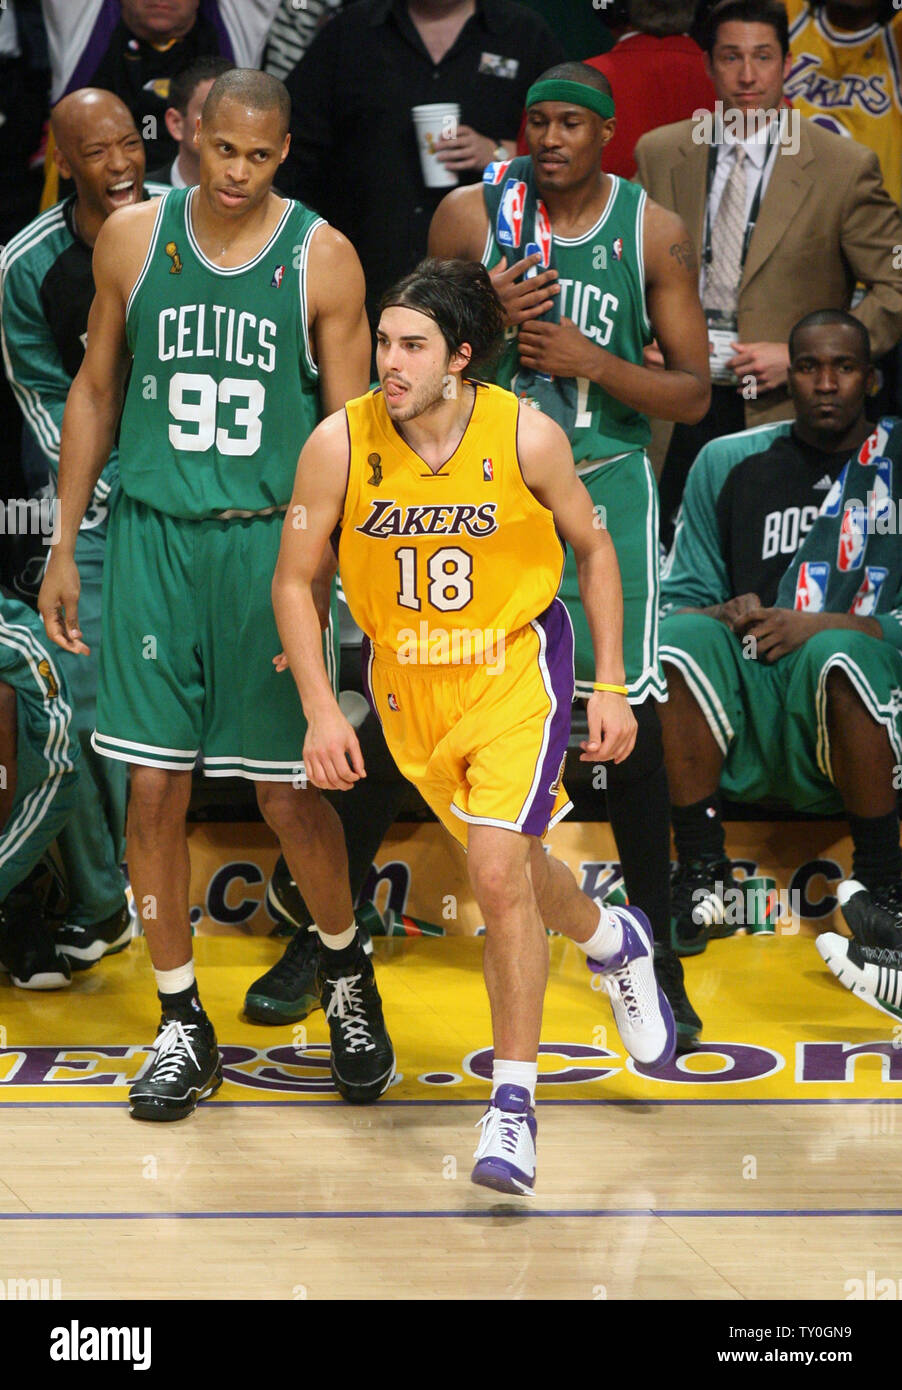 Los Angeles Lakers Sasha Vujacic' (18) celebra sus tres finales de puntero en la segunda mitad como Boston Celtics P.J. Brown (93) mira en el juego 3 de la final de la NBA en el Staples Center de Los Angeles el 10 de junio de 2008. Los Lakers derrotaron a los Celtics 87-81 a conjurar un agujero 3-0 en el mejor de siete series. Los Celtics llevan la serie 2-1. (UPI foto/Lazlo Fitz) Foto de stock